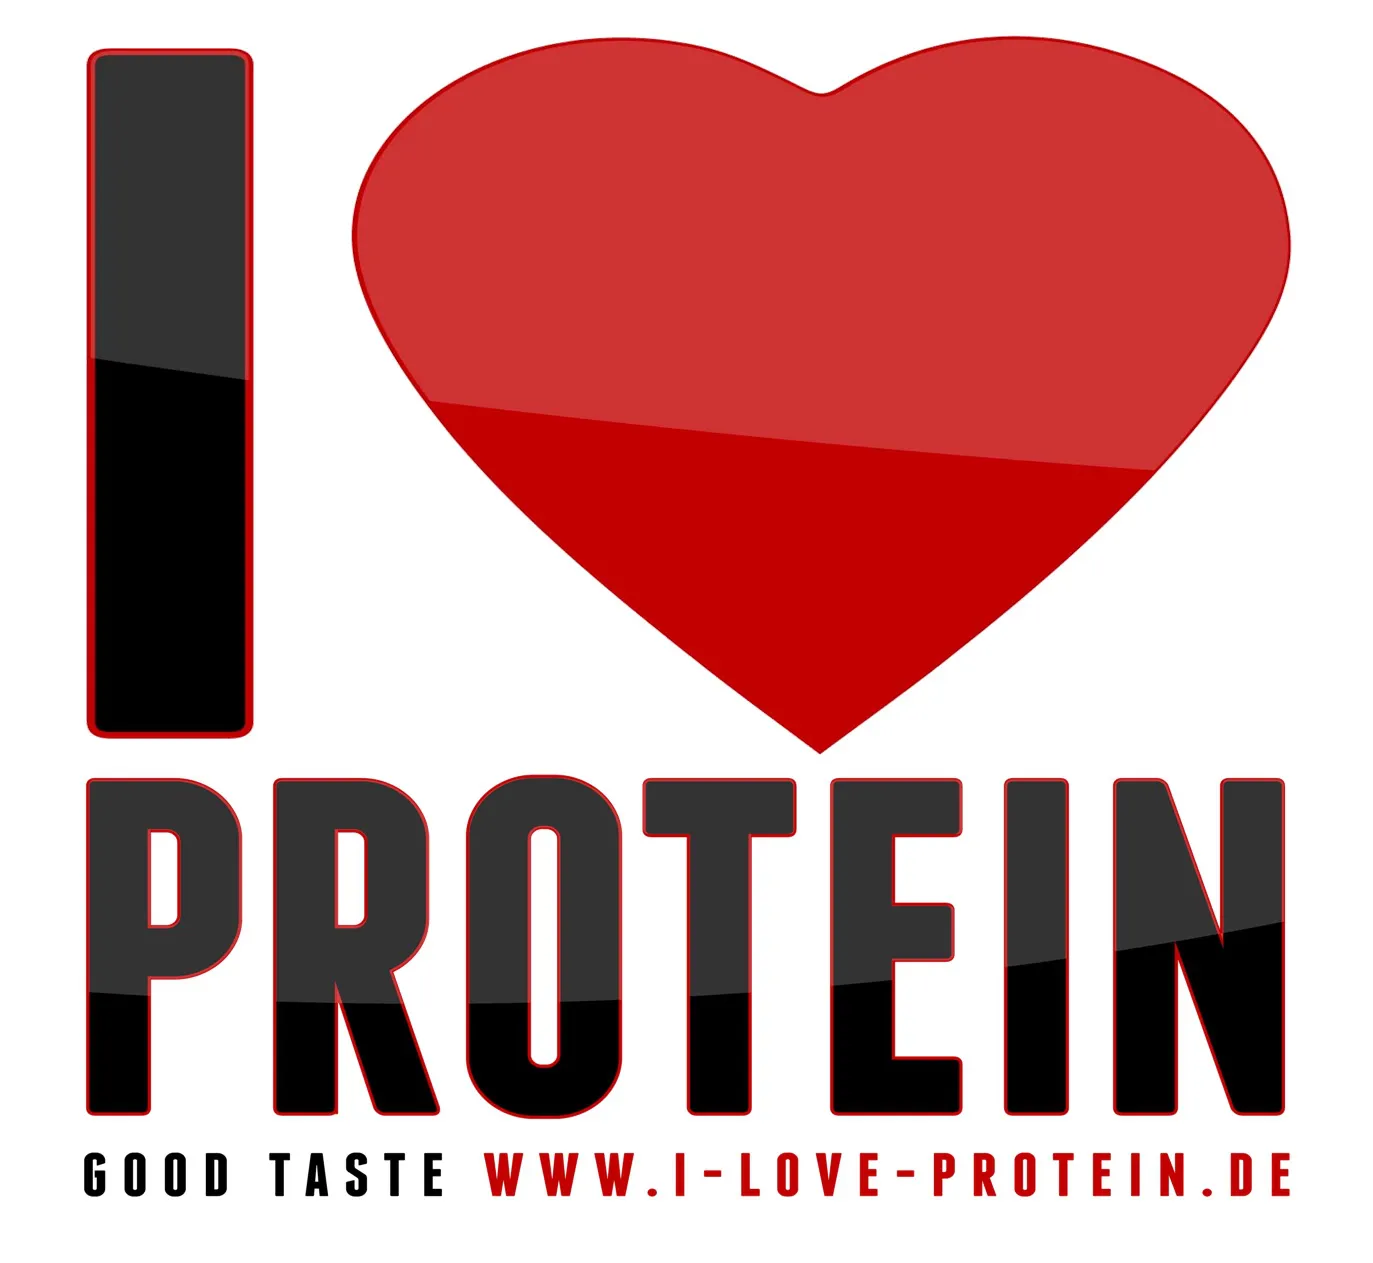 i-love-protein.de